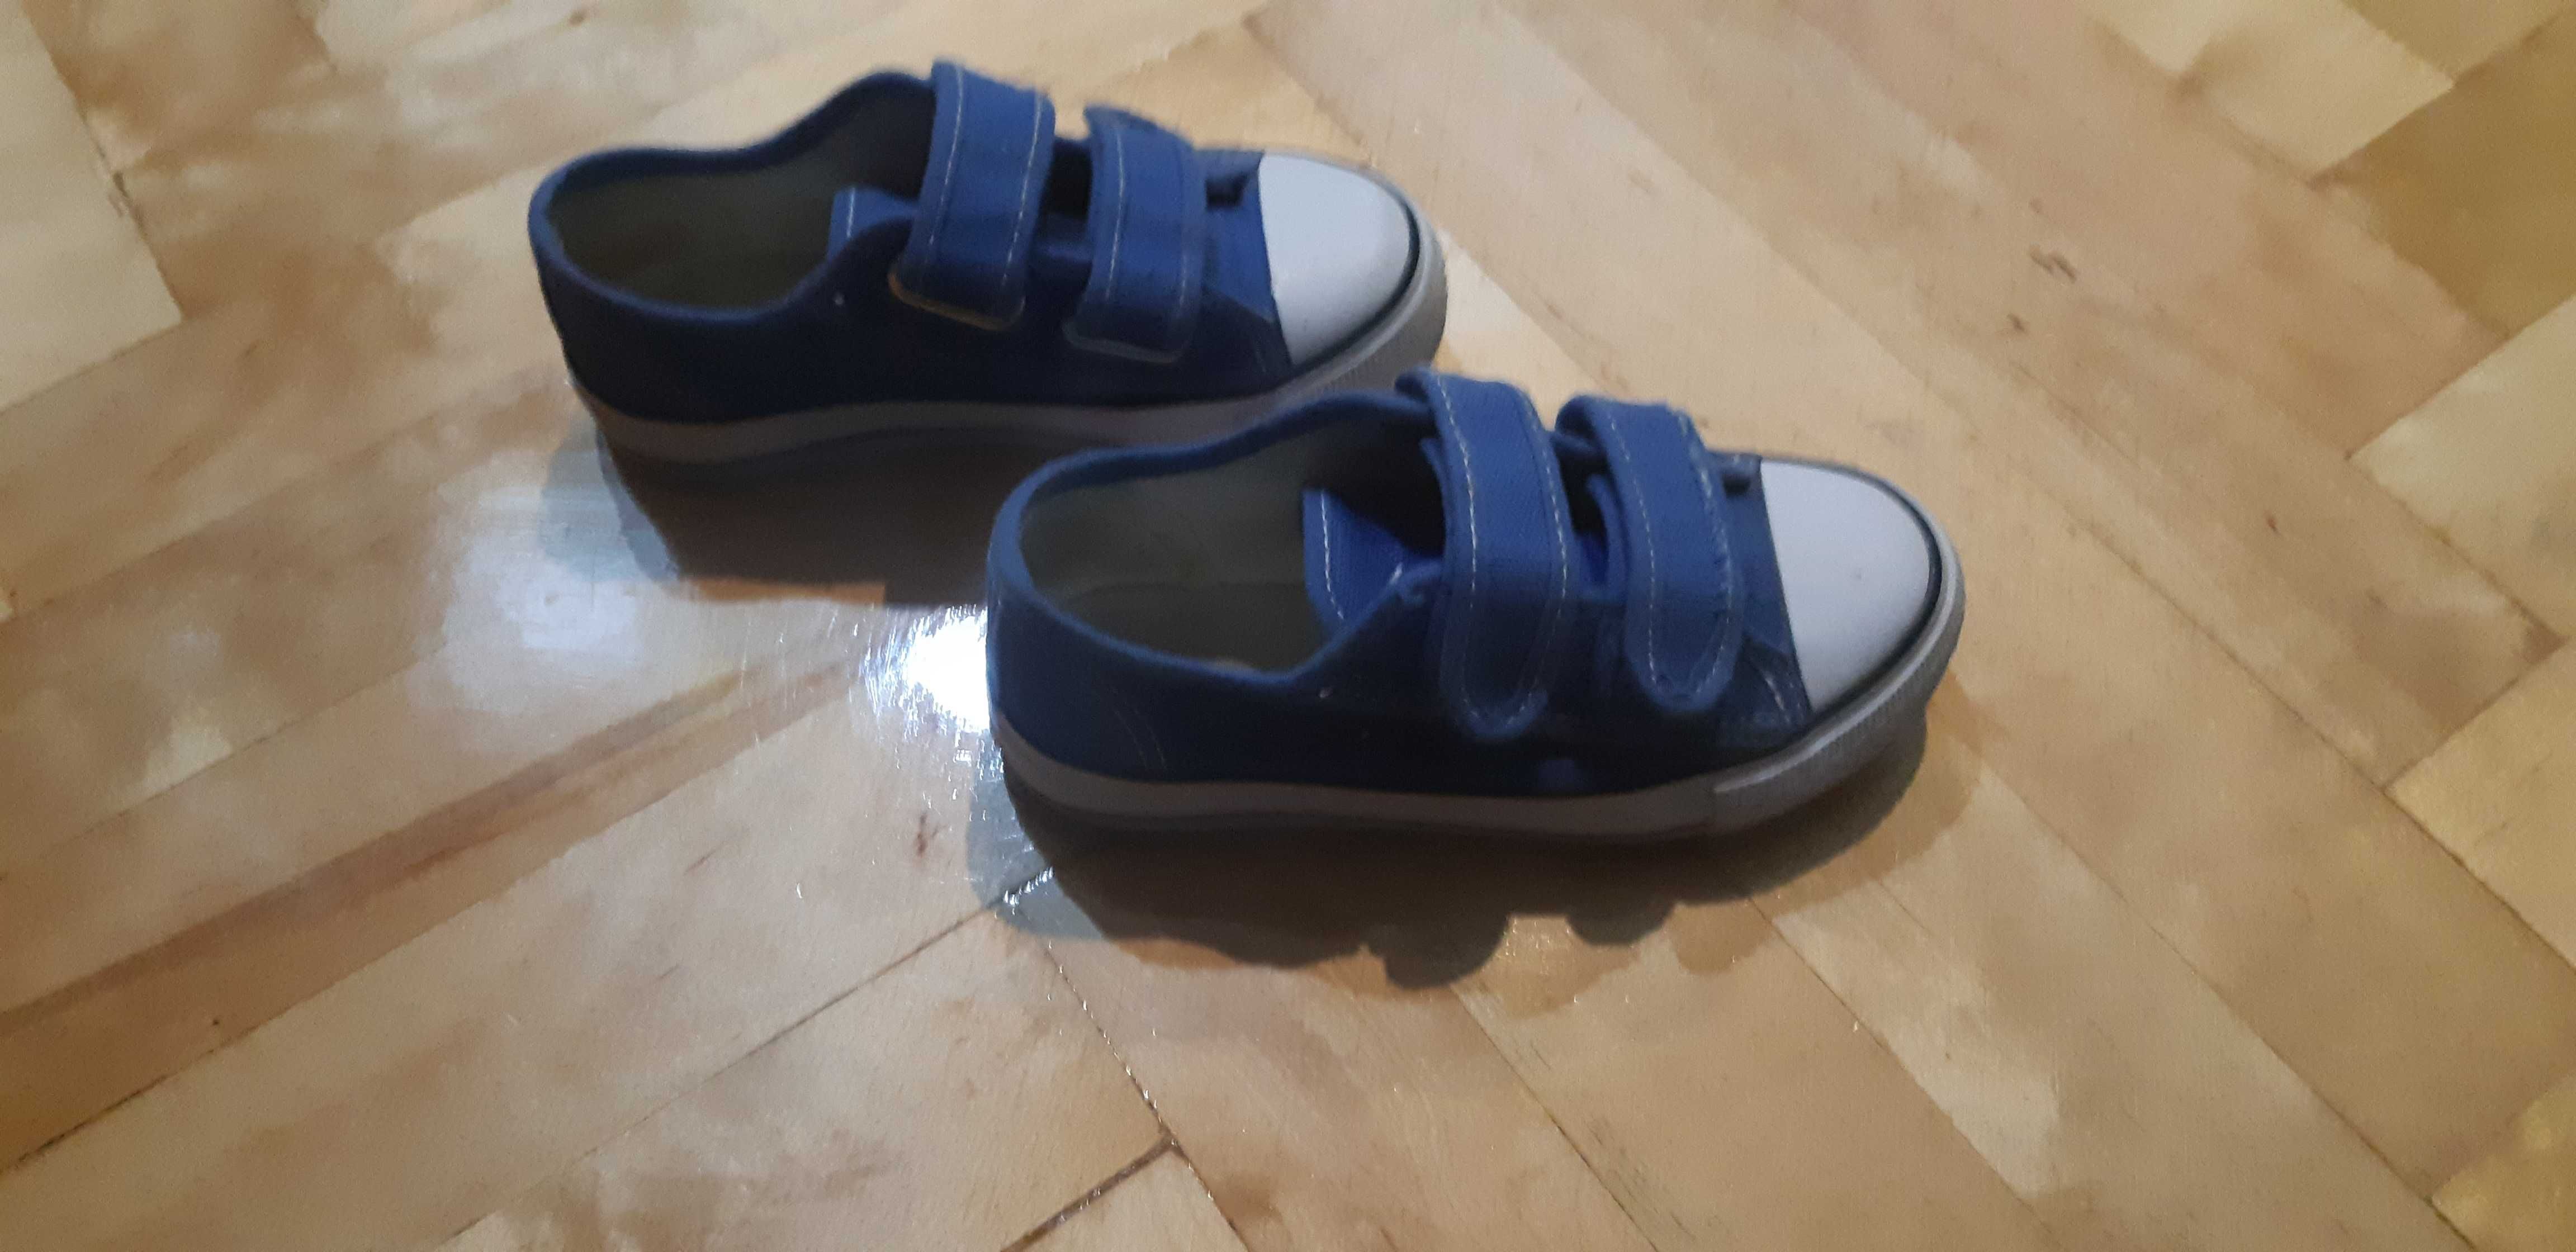 buty chłopięce trampki niebieskie rozmiar 25